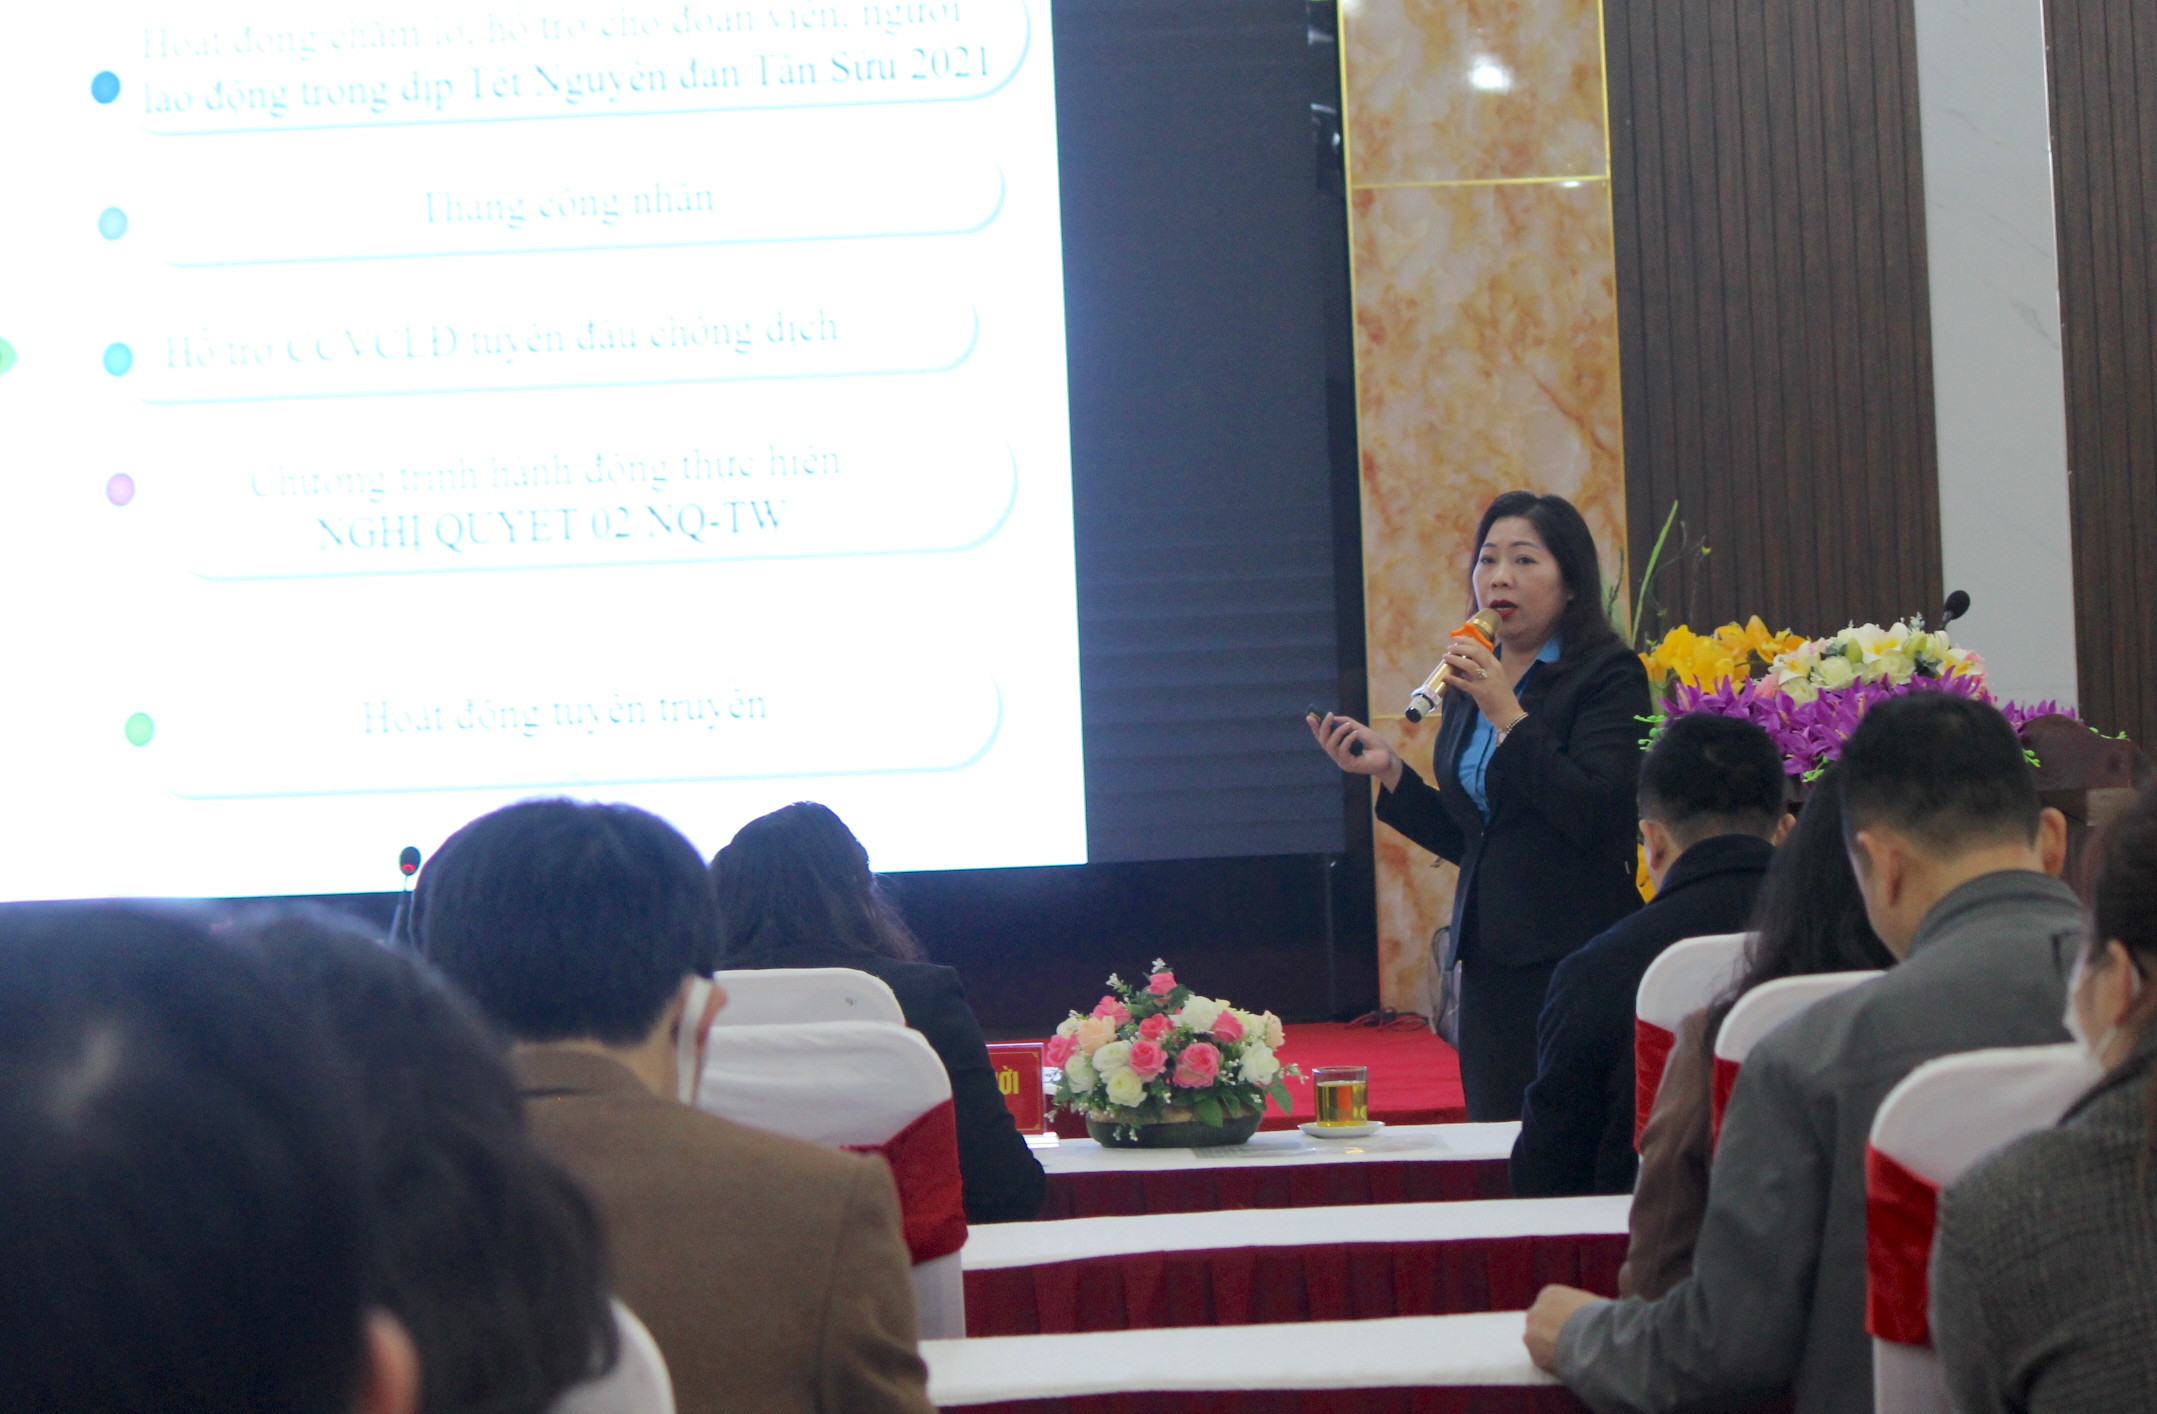 Đồng chí Trần Thu Hà - Phó Chủ tịch công đoàn ngành Y tế báo cáo hoạt động công đoàn năm 2021 và triển khai nhiệm vụ năm 2022. Ảnh: D.T